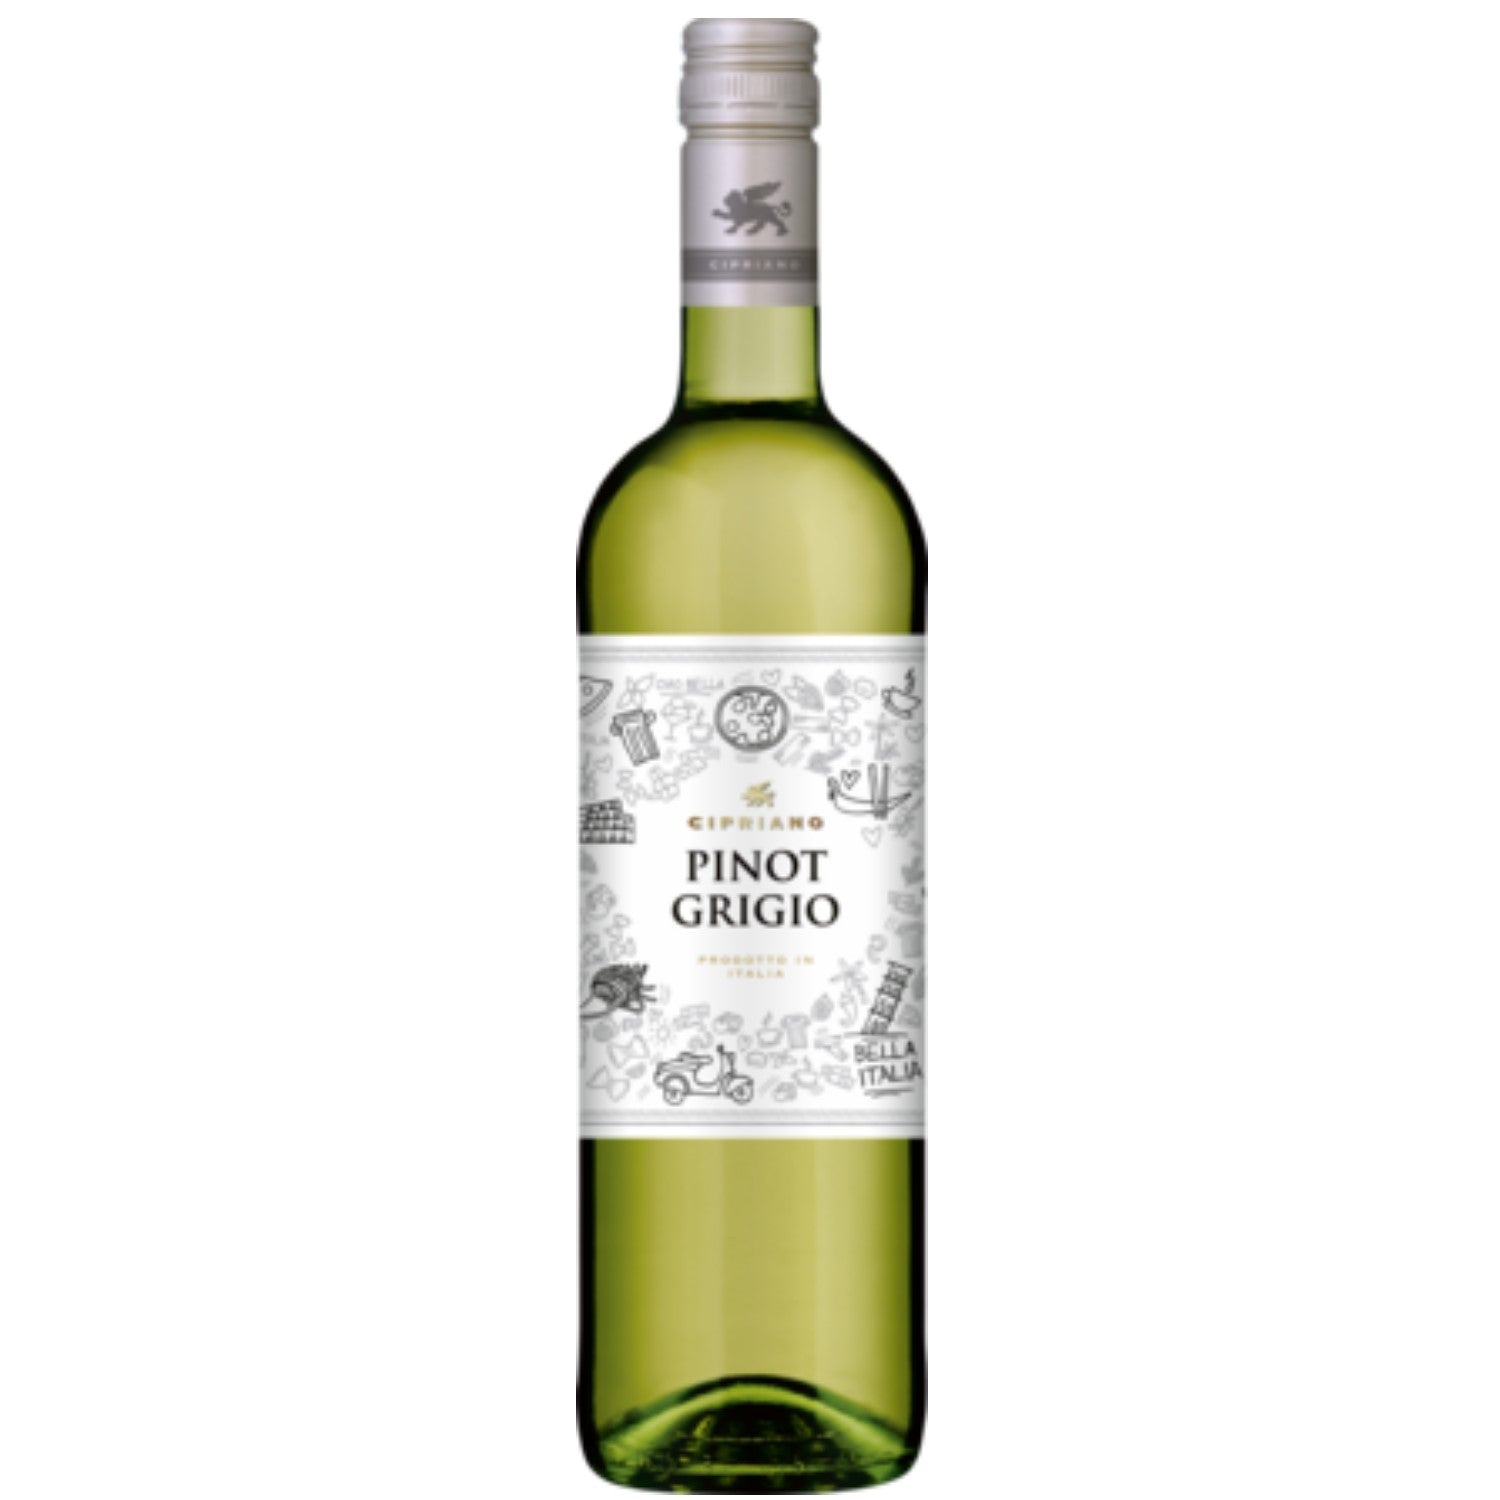 Cipriano Pinot Grigio Venezie Weißwein italienischer Wein trocken DOC Italien (3 x 1.0l) - Versanel -